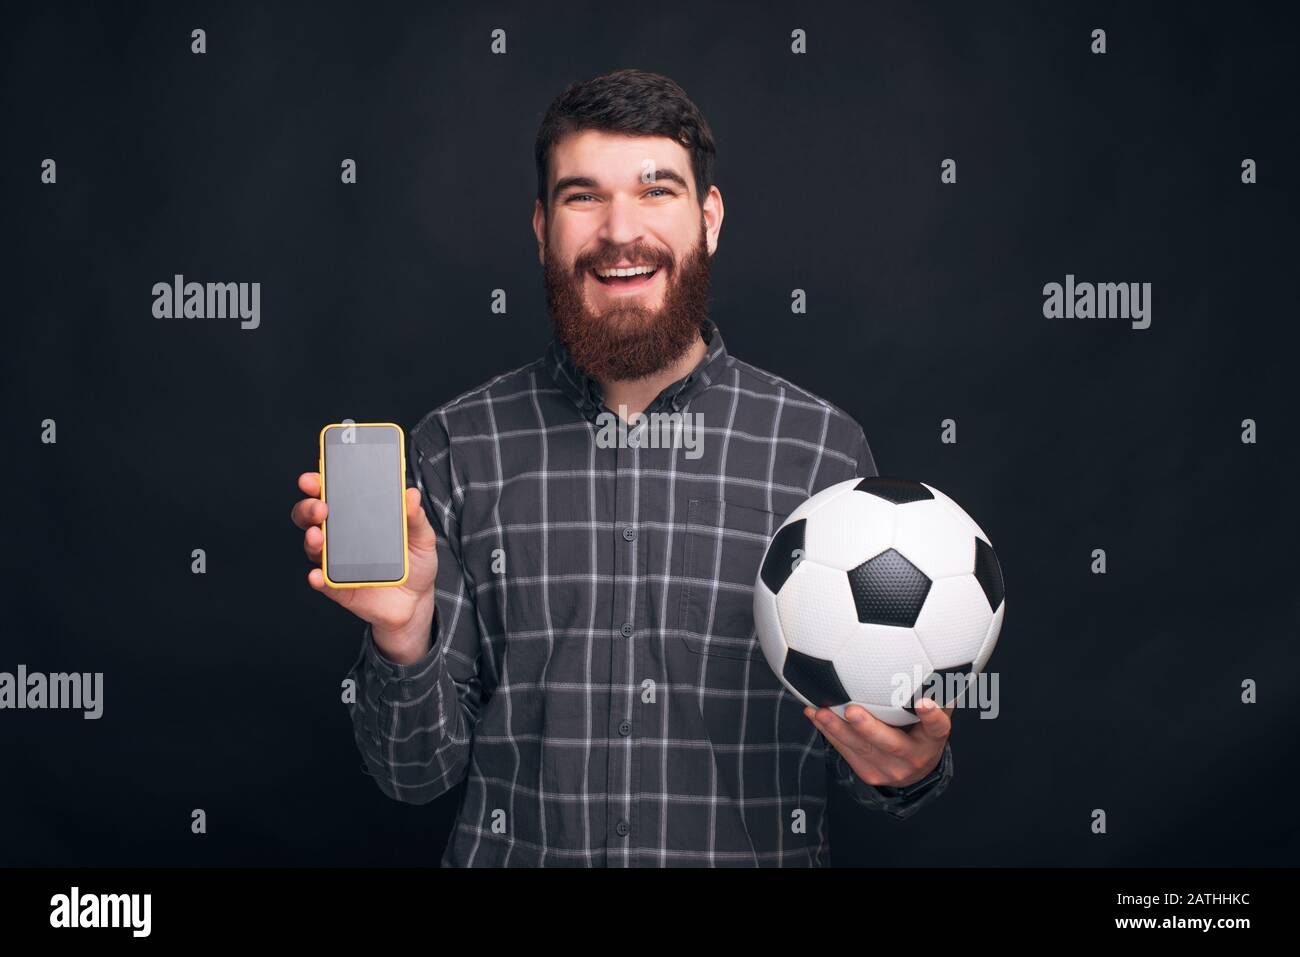 Puoi guardare il calcio o il calcio che si stringe sul tuo telefono. L'uomo bearded sta tenendo una sfera ed un telefono nell'altra mano. Foto Stock